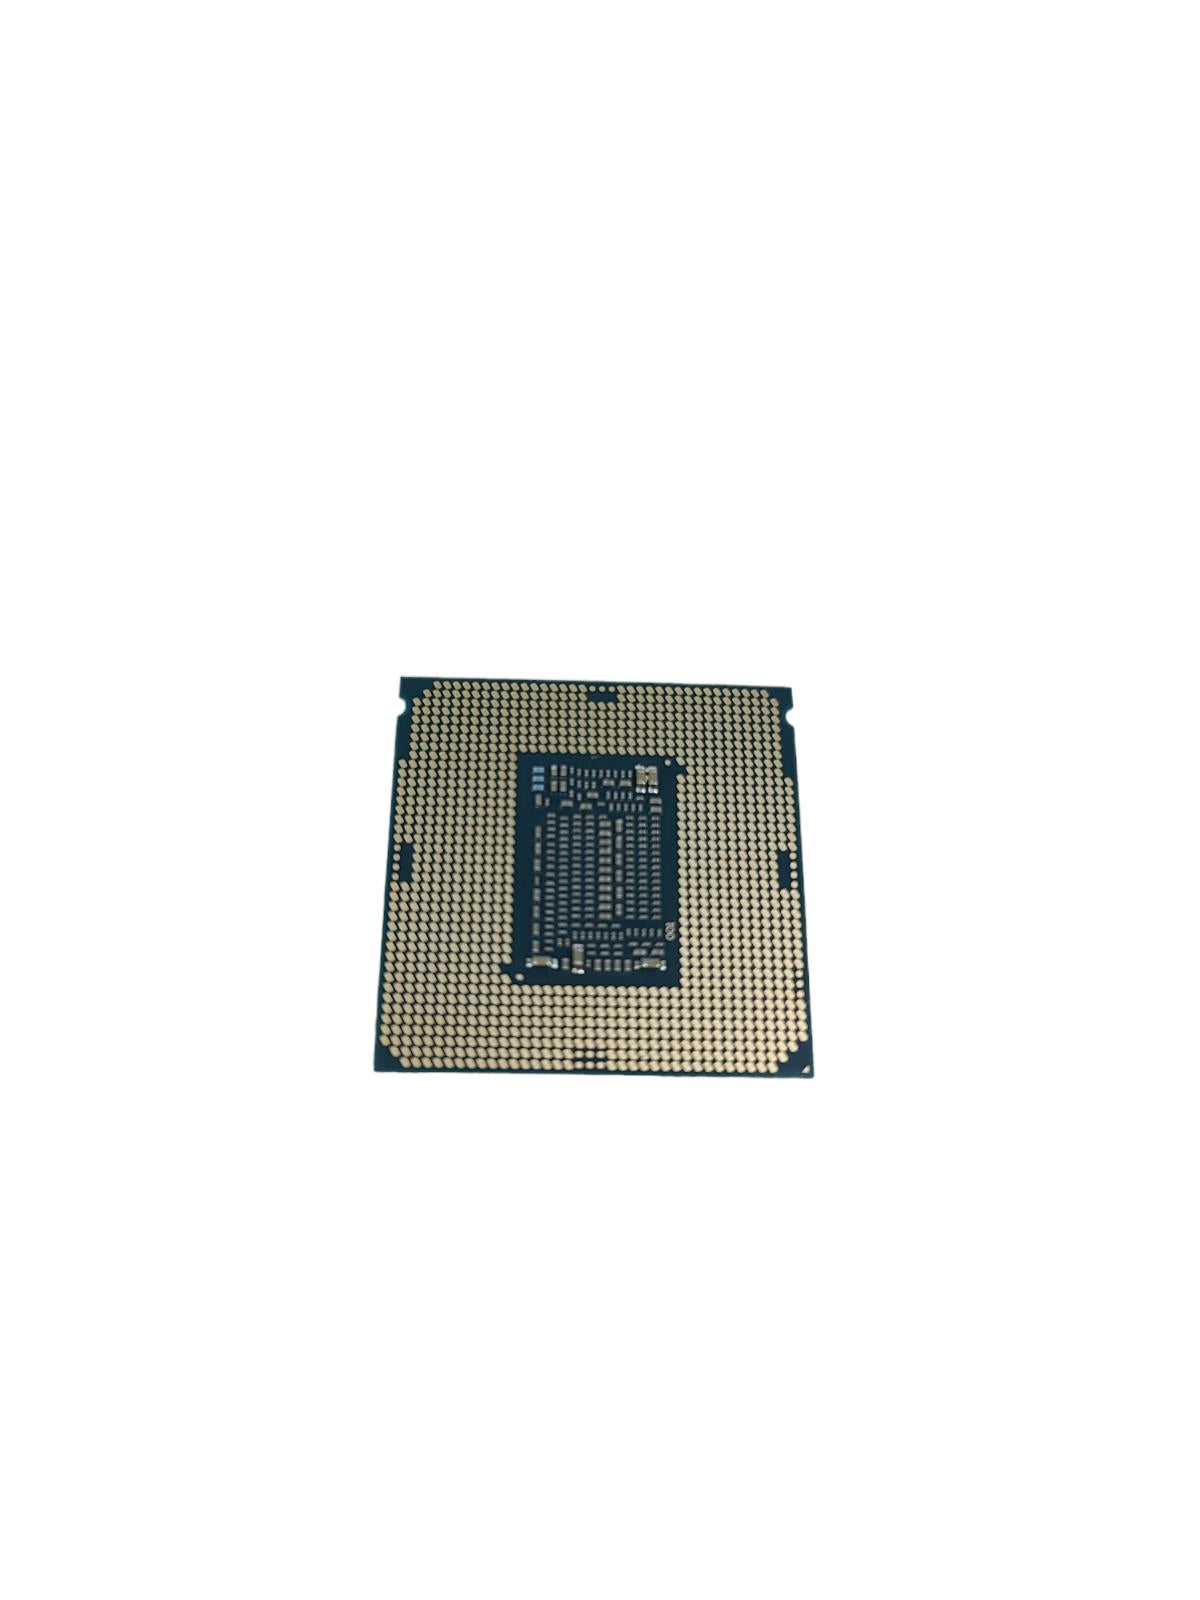 Intel Core i5-8500T processor 2.1 GHz 9MB Smart Cache Core SR3XD